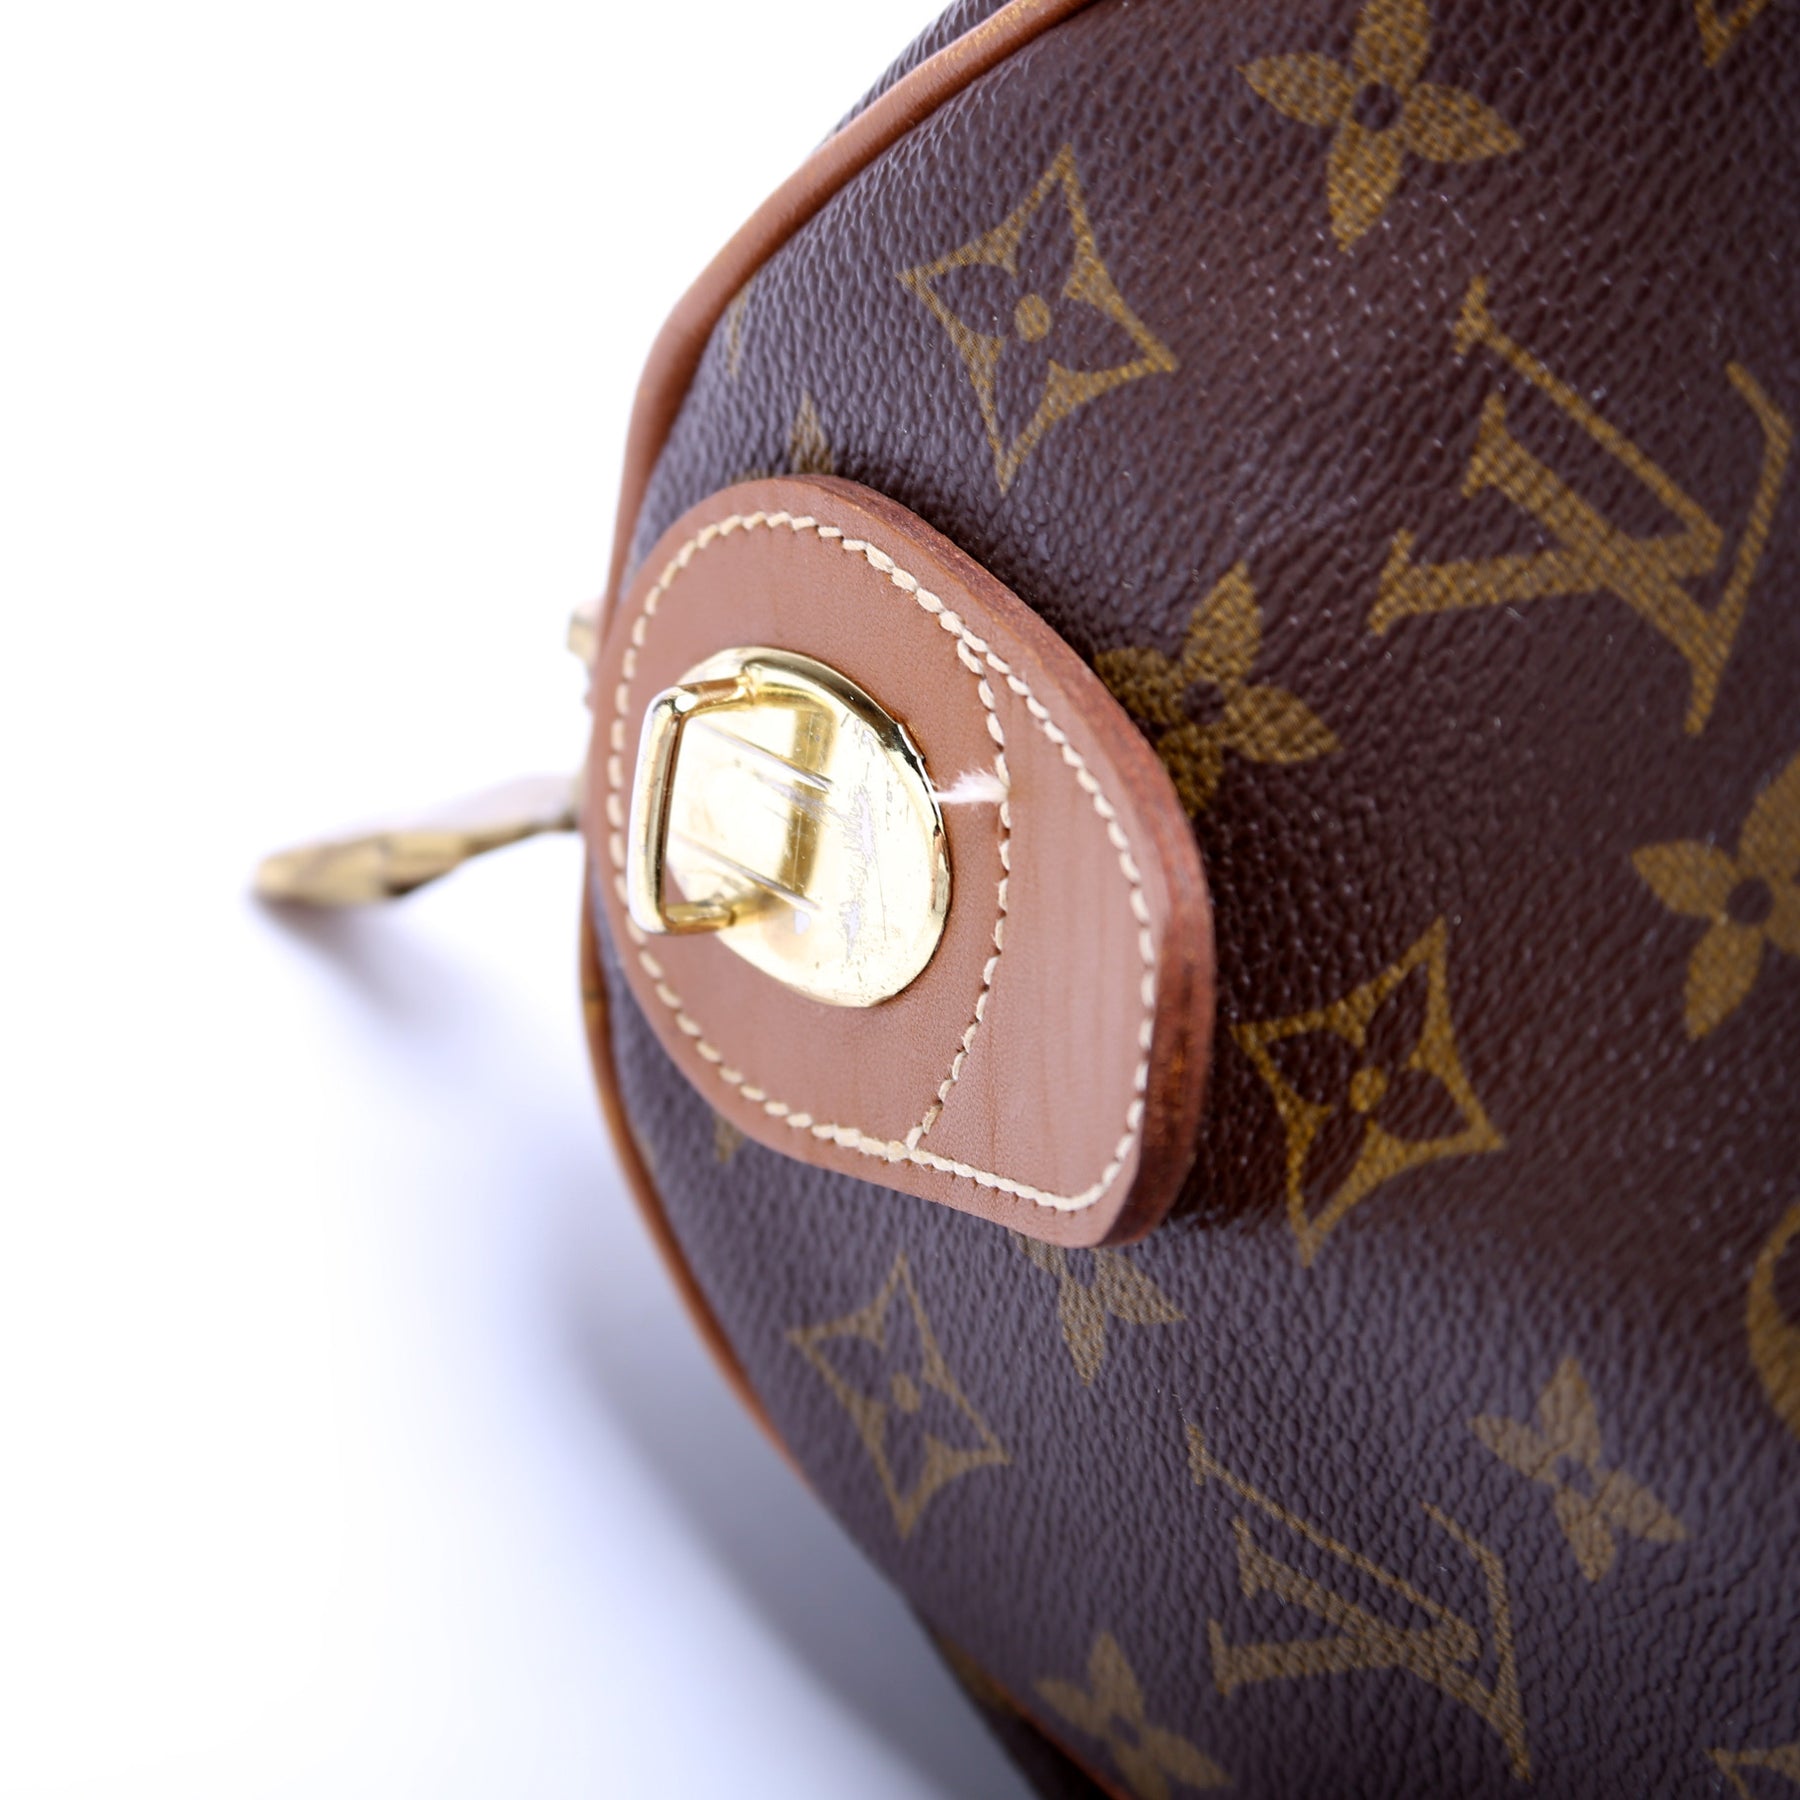 Vintage Louis Vuitton speedy 30 brown monogram canvas speedy satchel bag  French